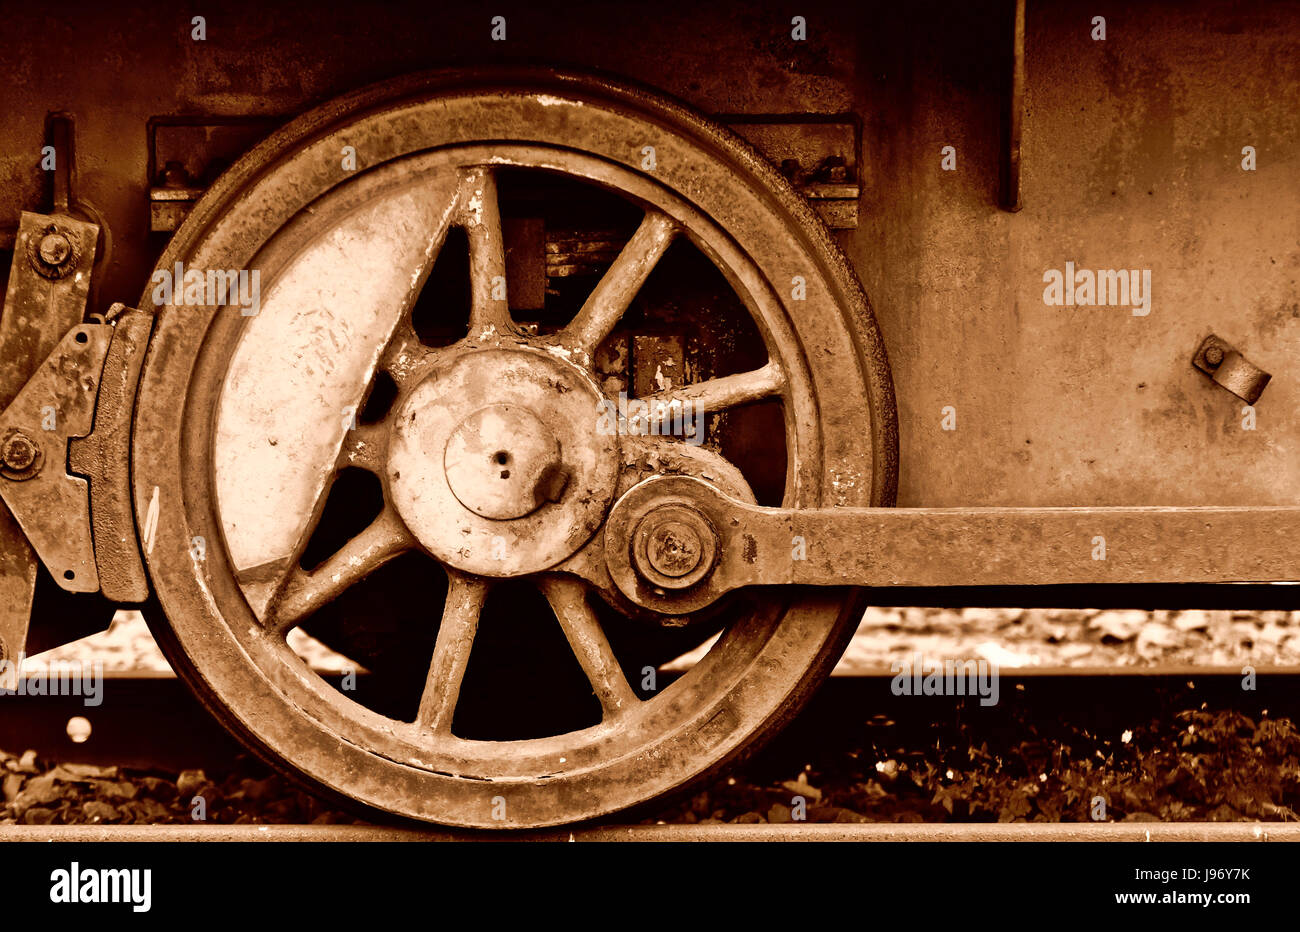 Roue, vintage, le fer, l'acier, métal, mécanicien, retro, chemin de fer, locomotive, Banque D'Images